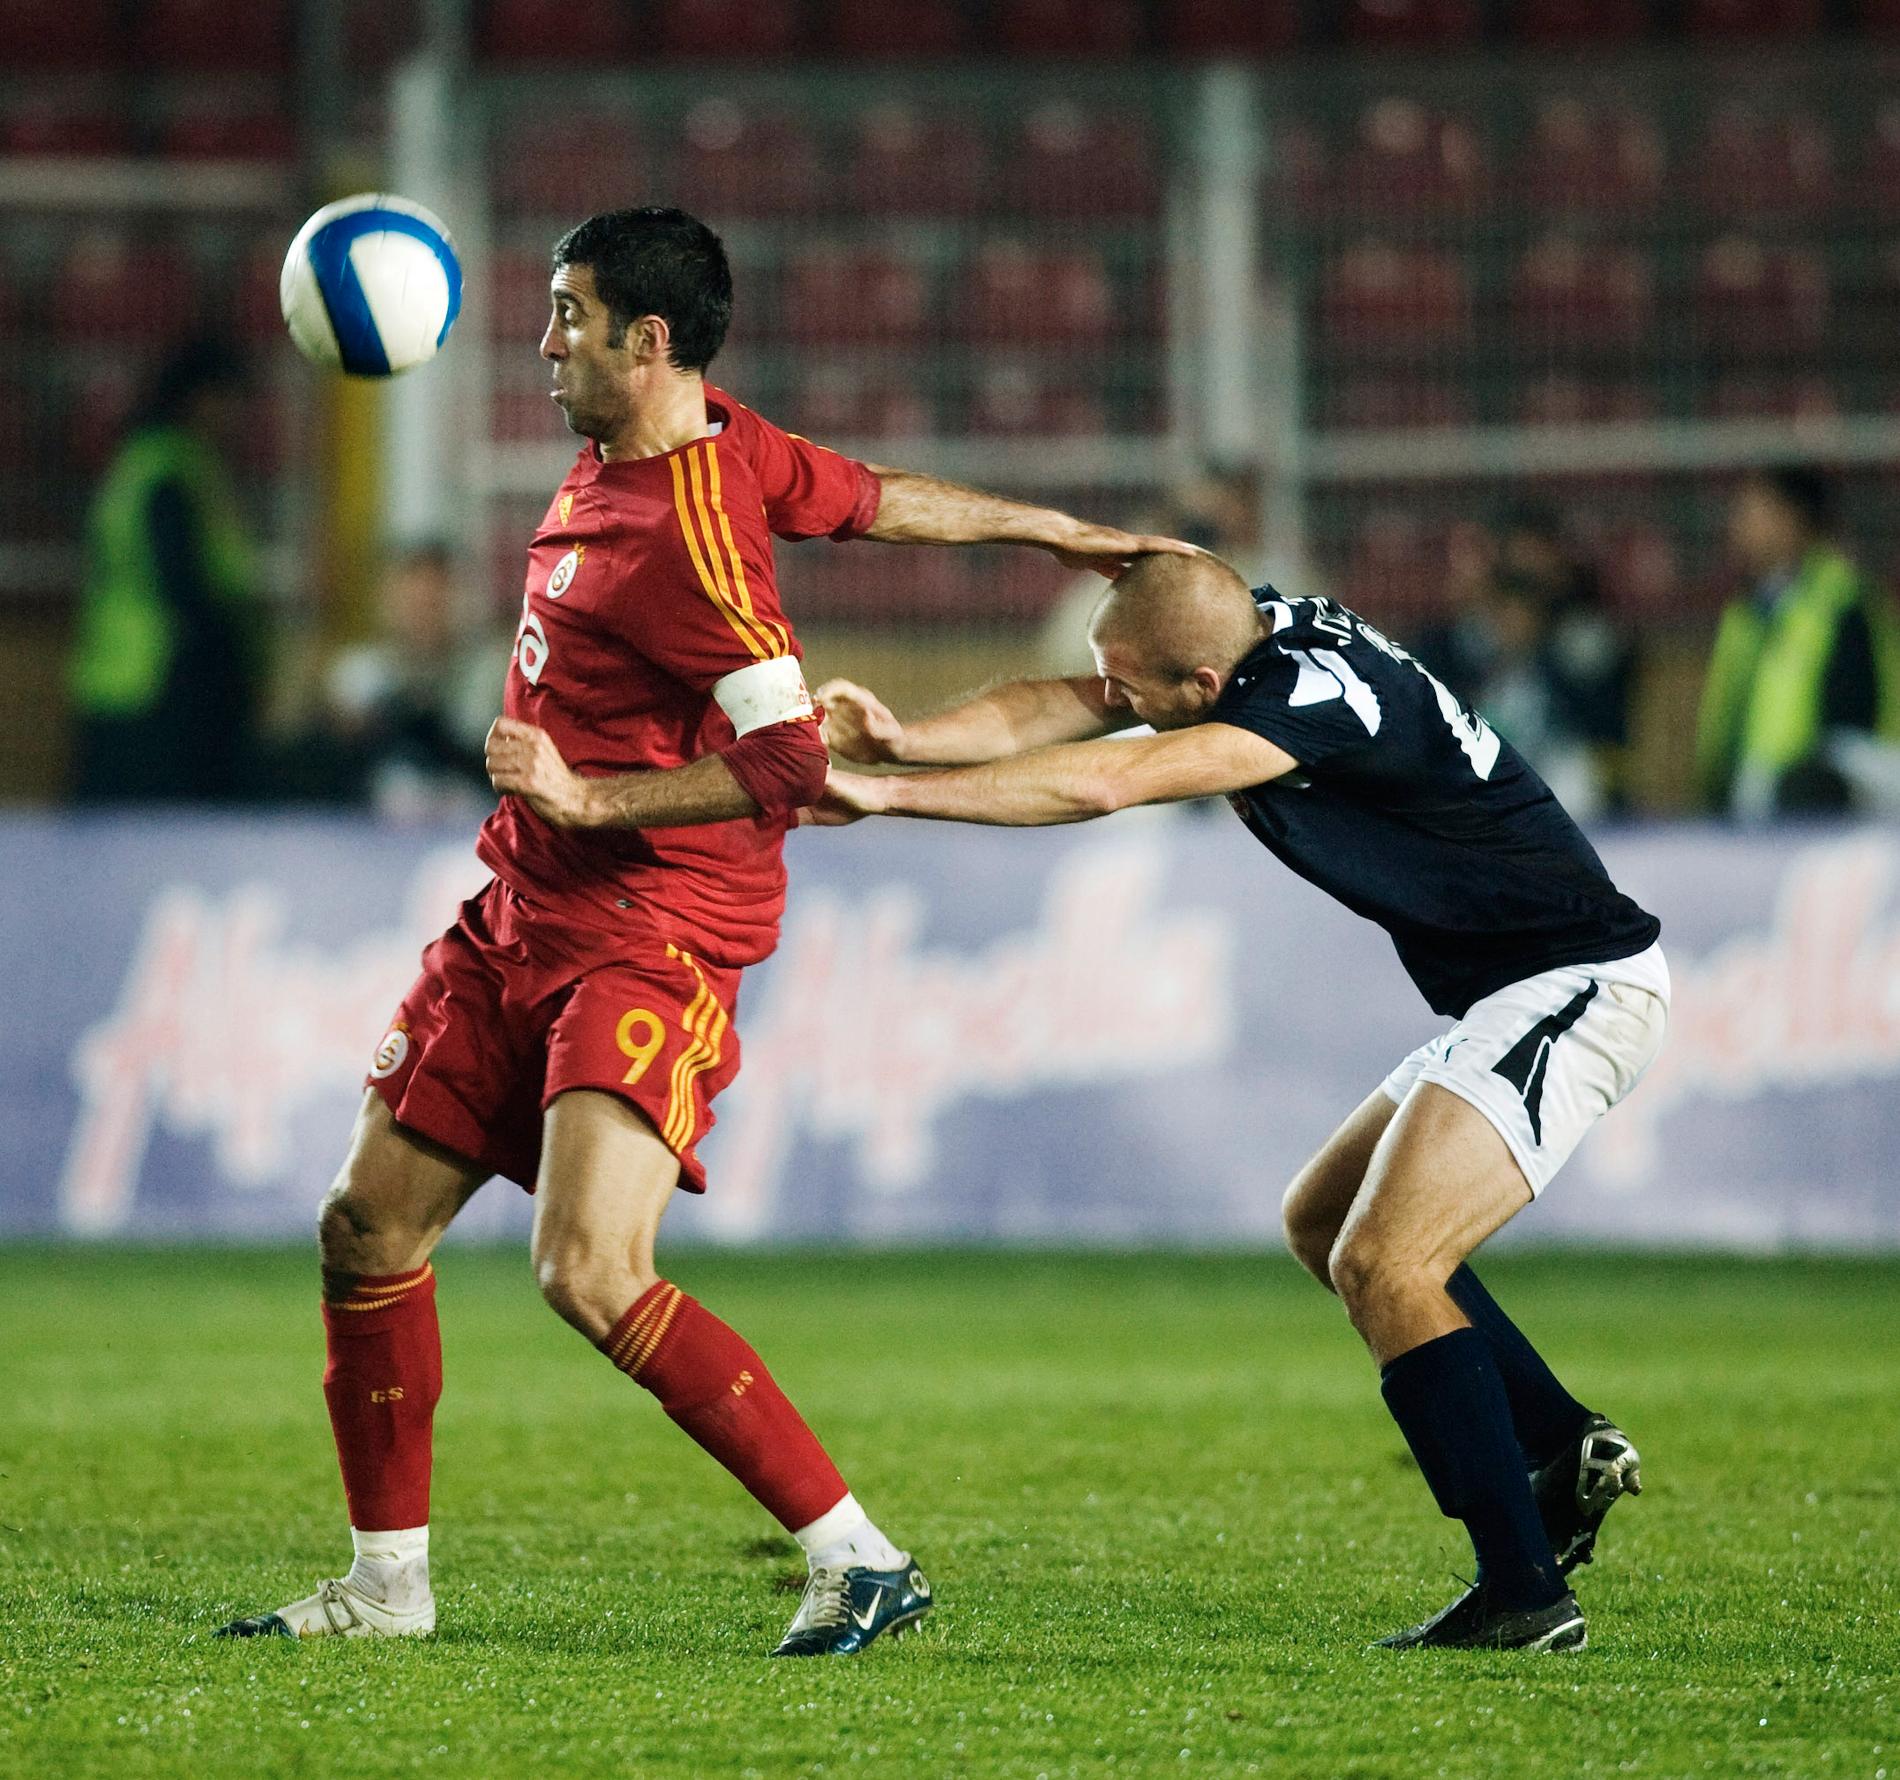 UEFA-cupen 2007, Galatasaray–Helsingborg. Hakan Şükür håller undan Christoffer Andersson.